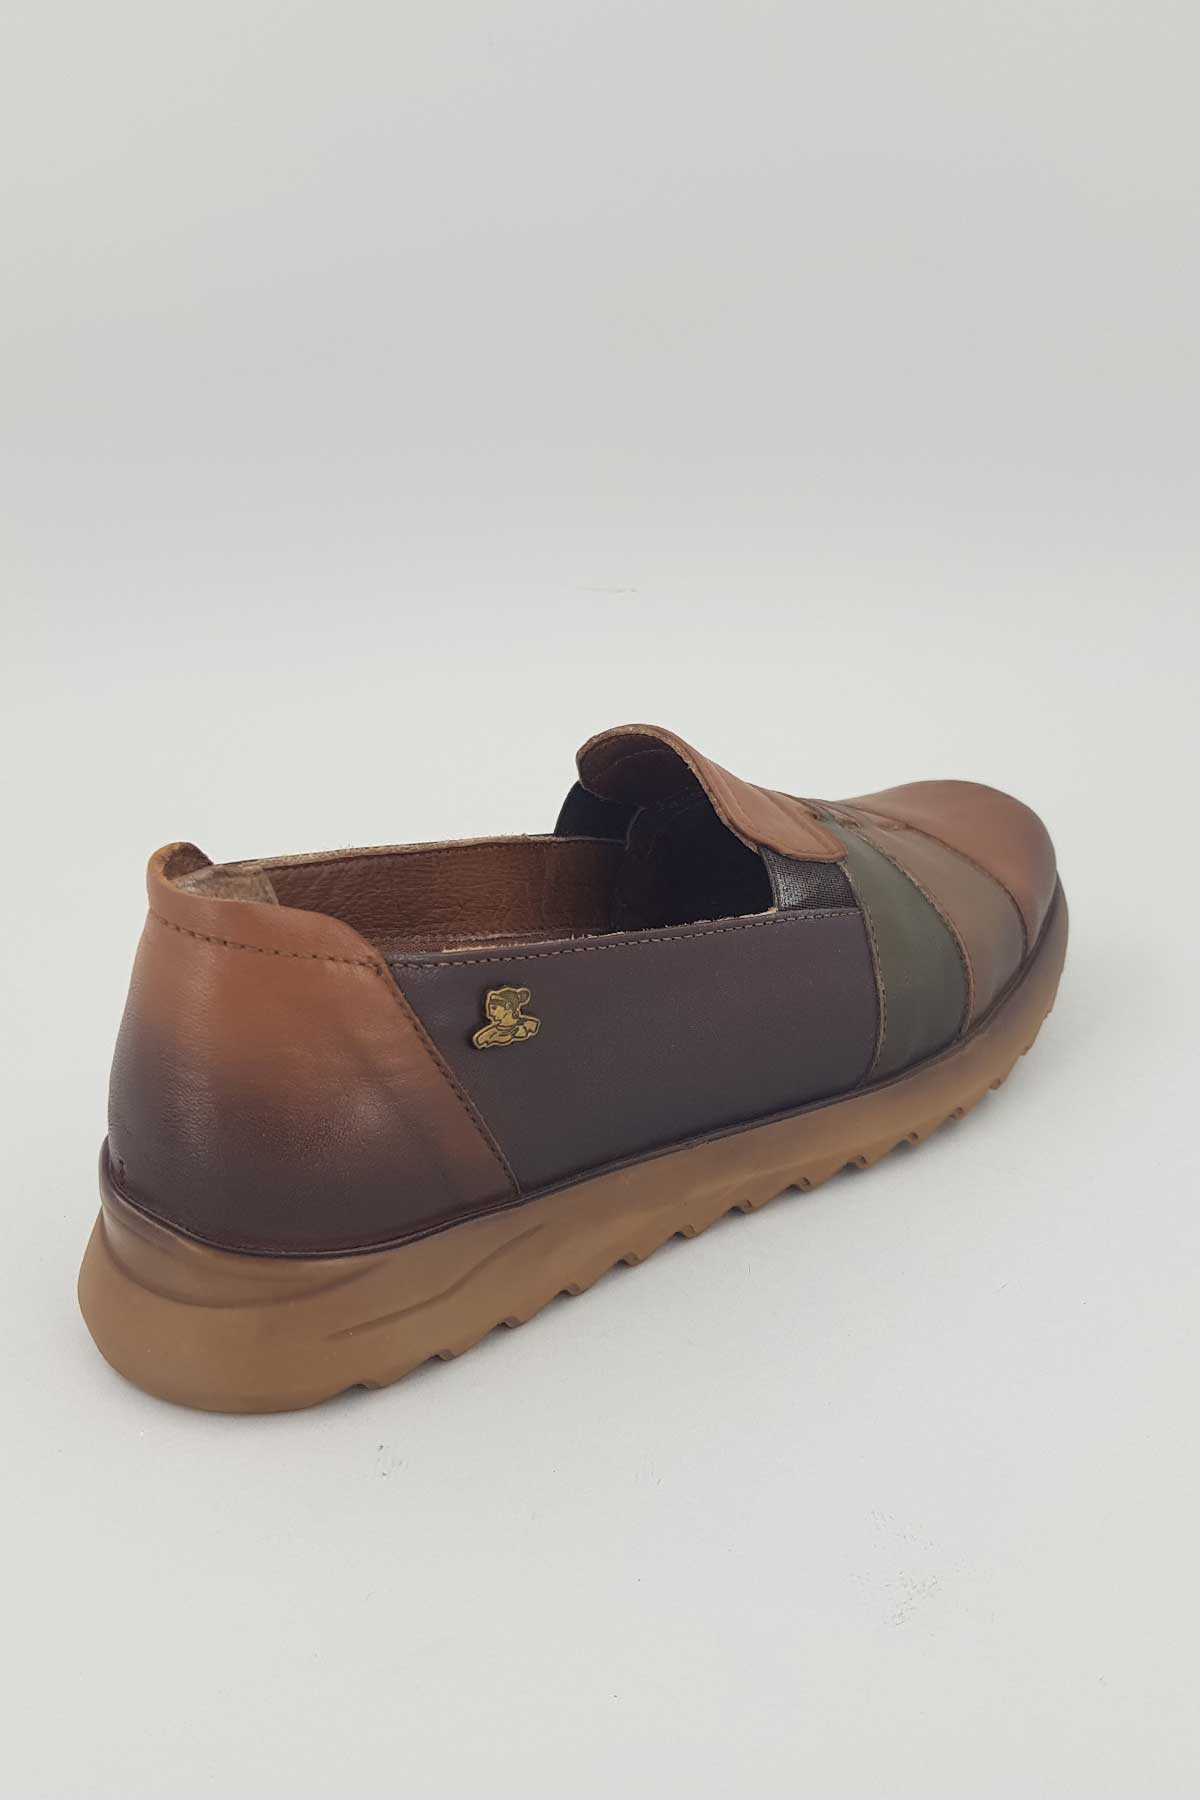 Kadın Comfort Deri Ayakkabı Taba 1813680K